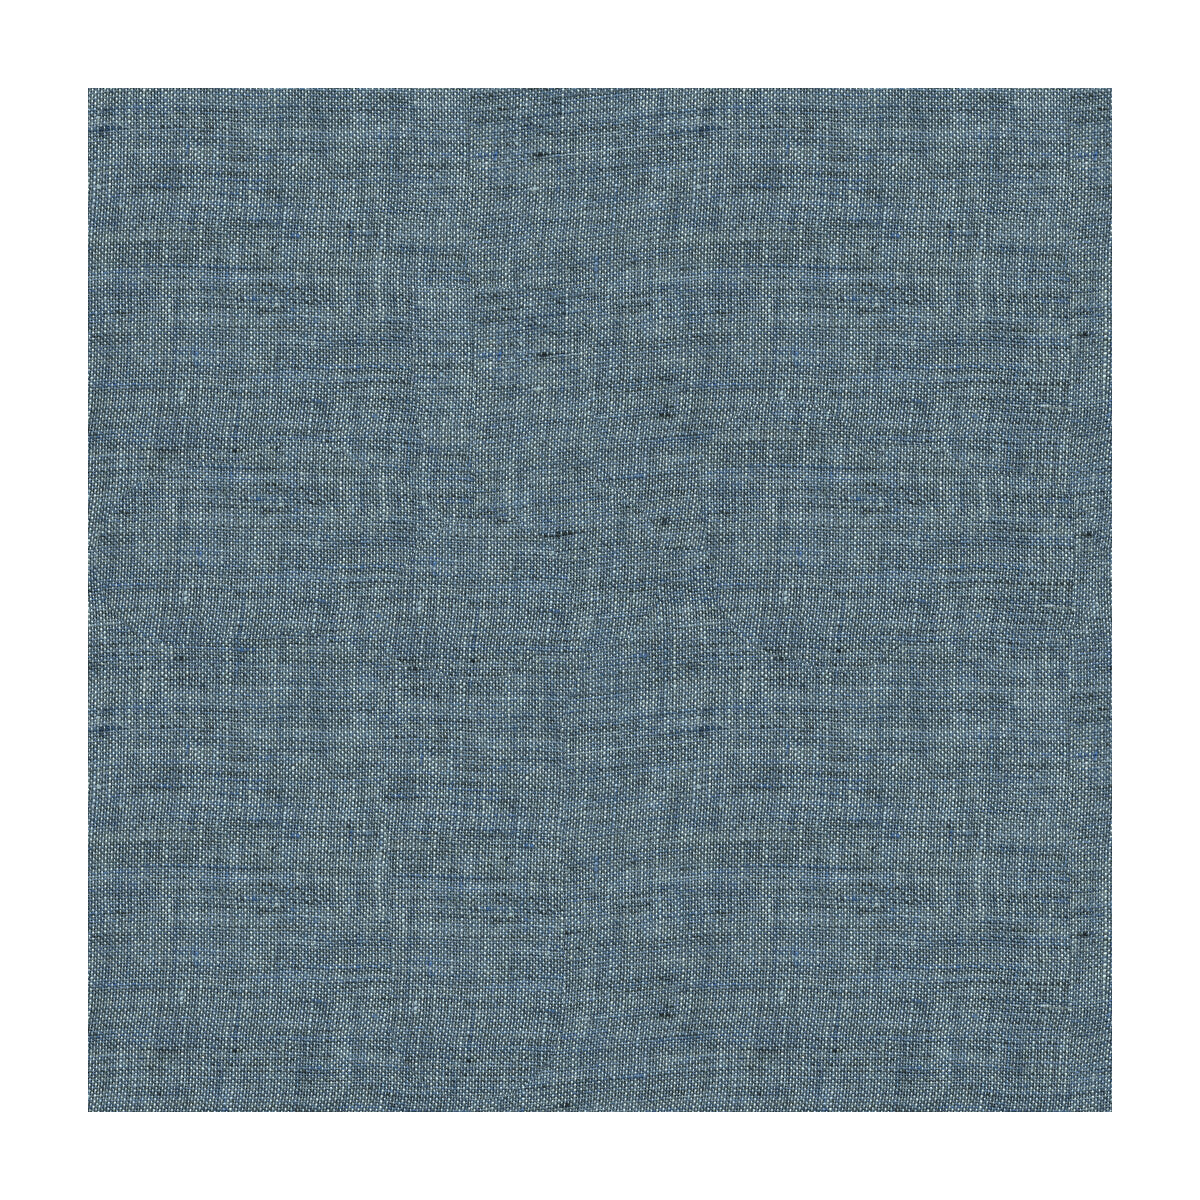 Kravet Design fabric in 4018-5 color - pattern 4018.5.0 - by Kravet Design